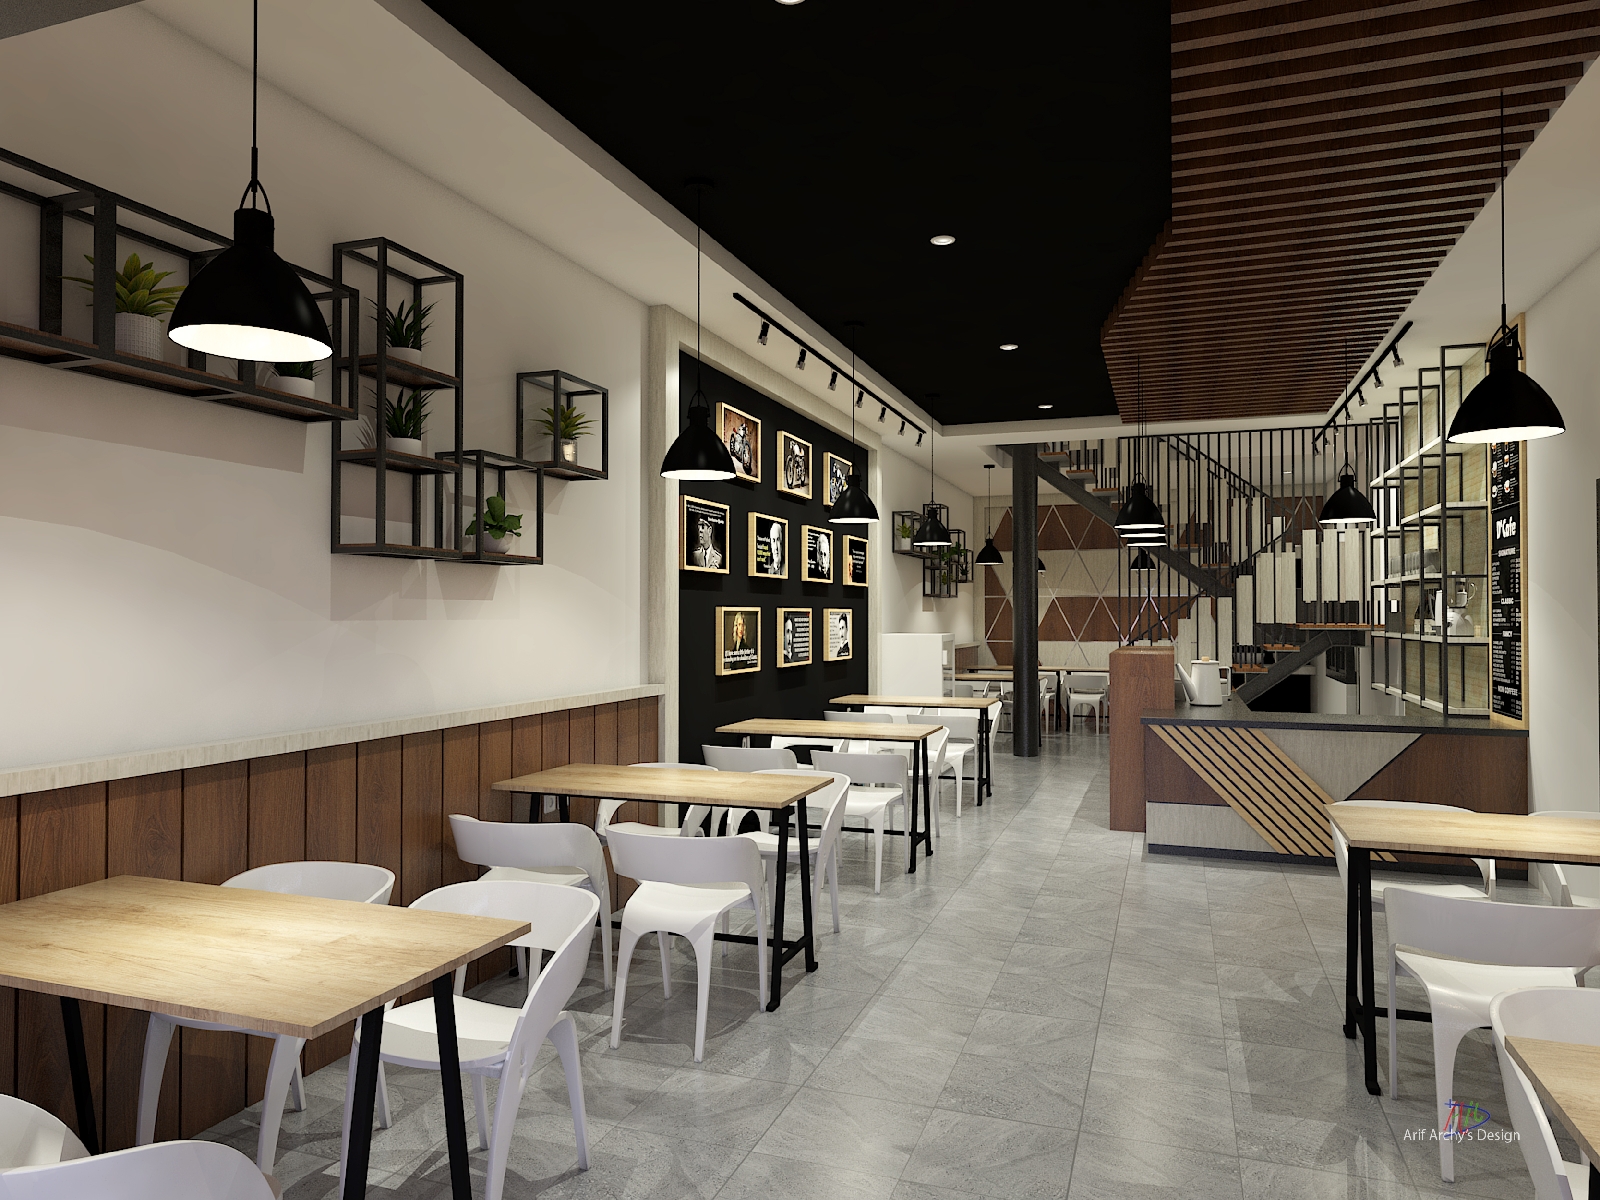  Desain Interior Cafe 